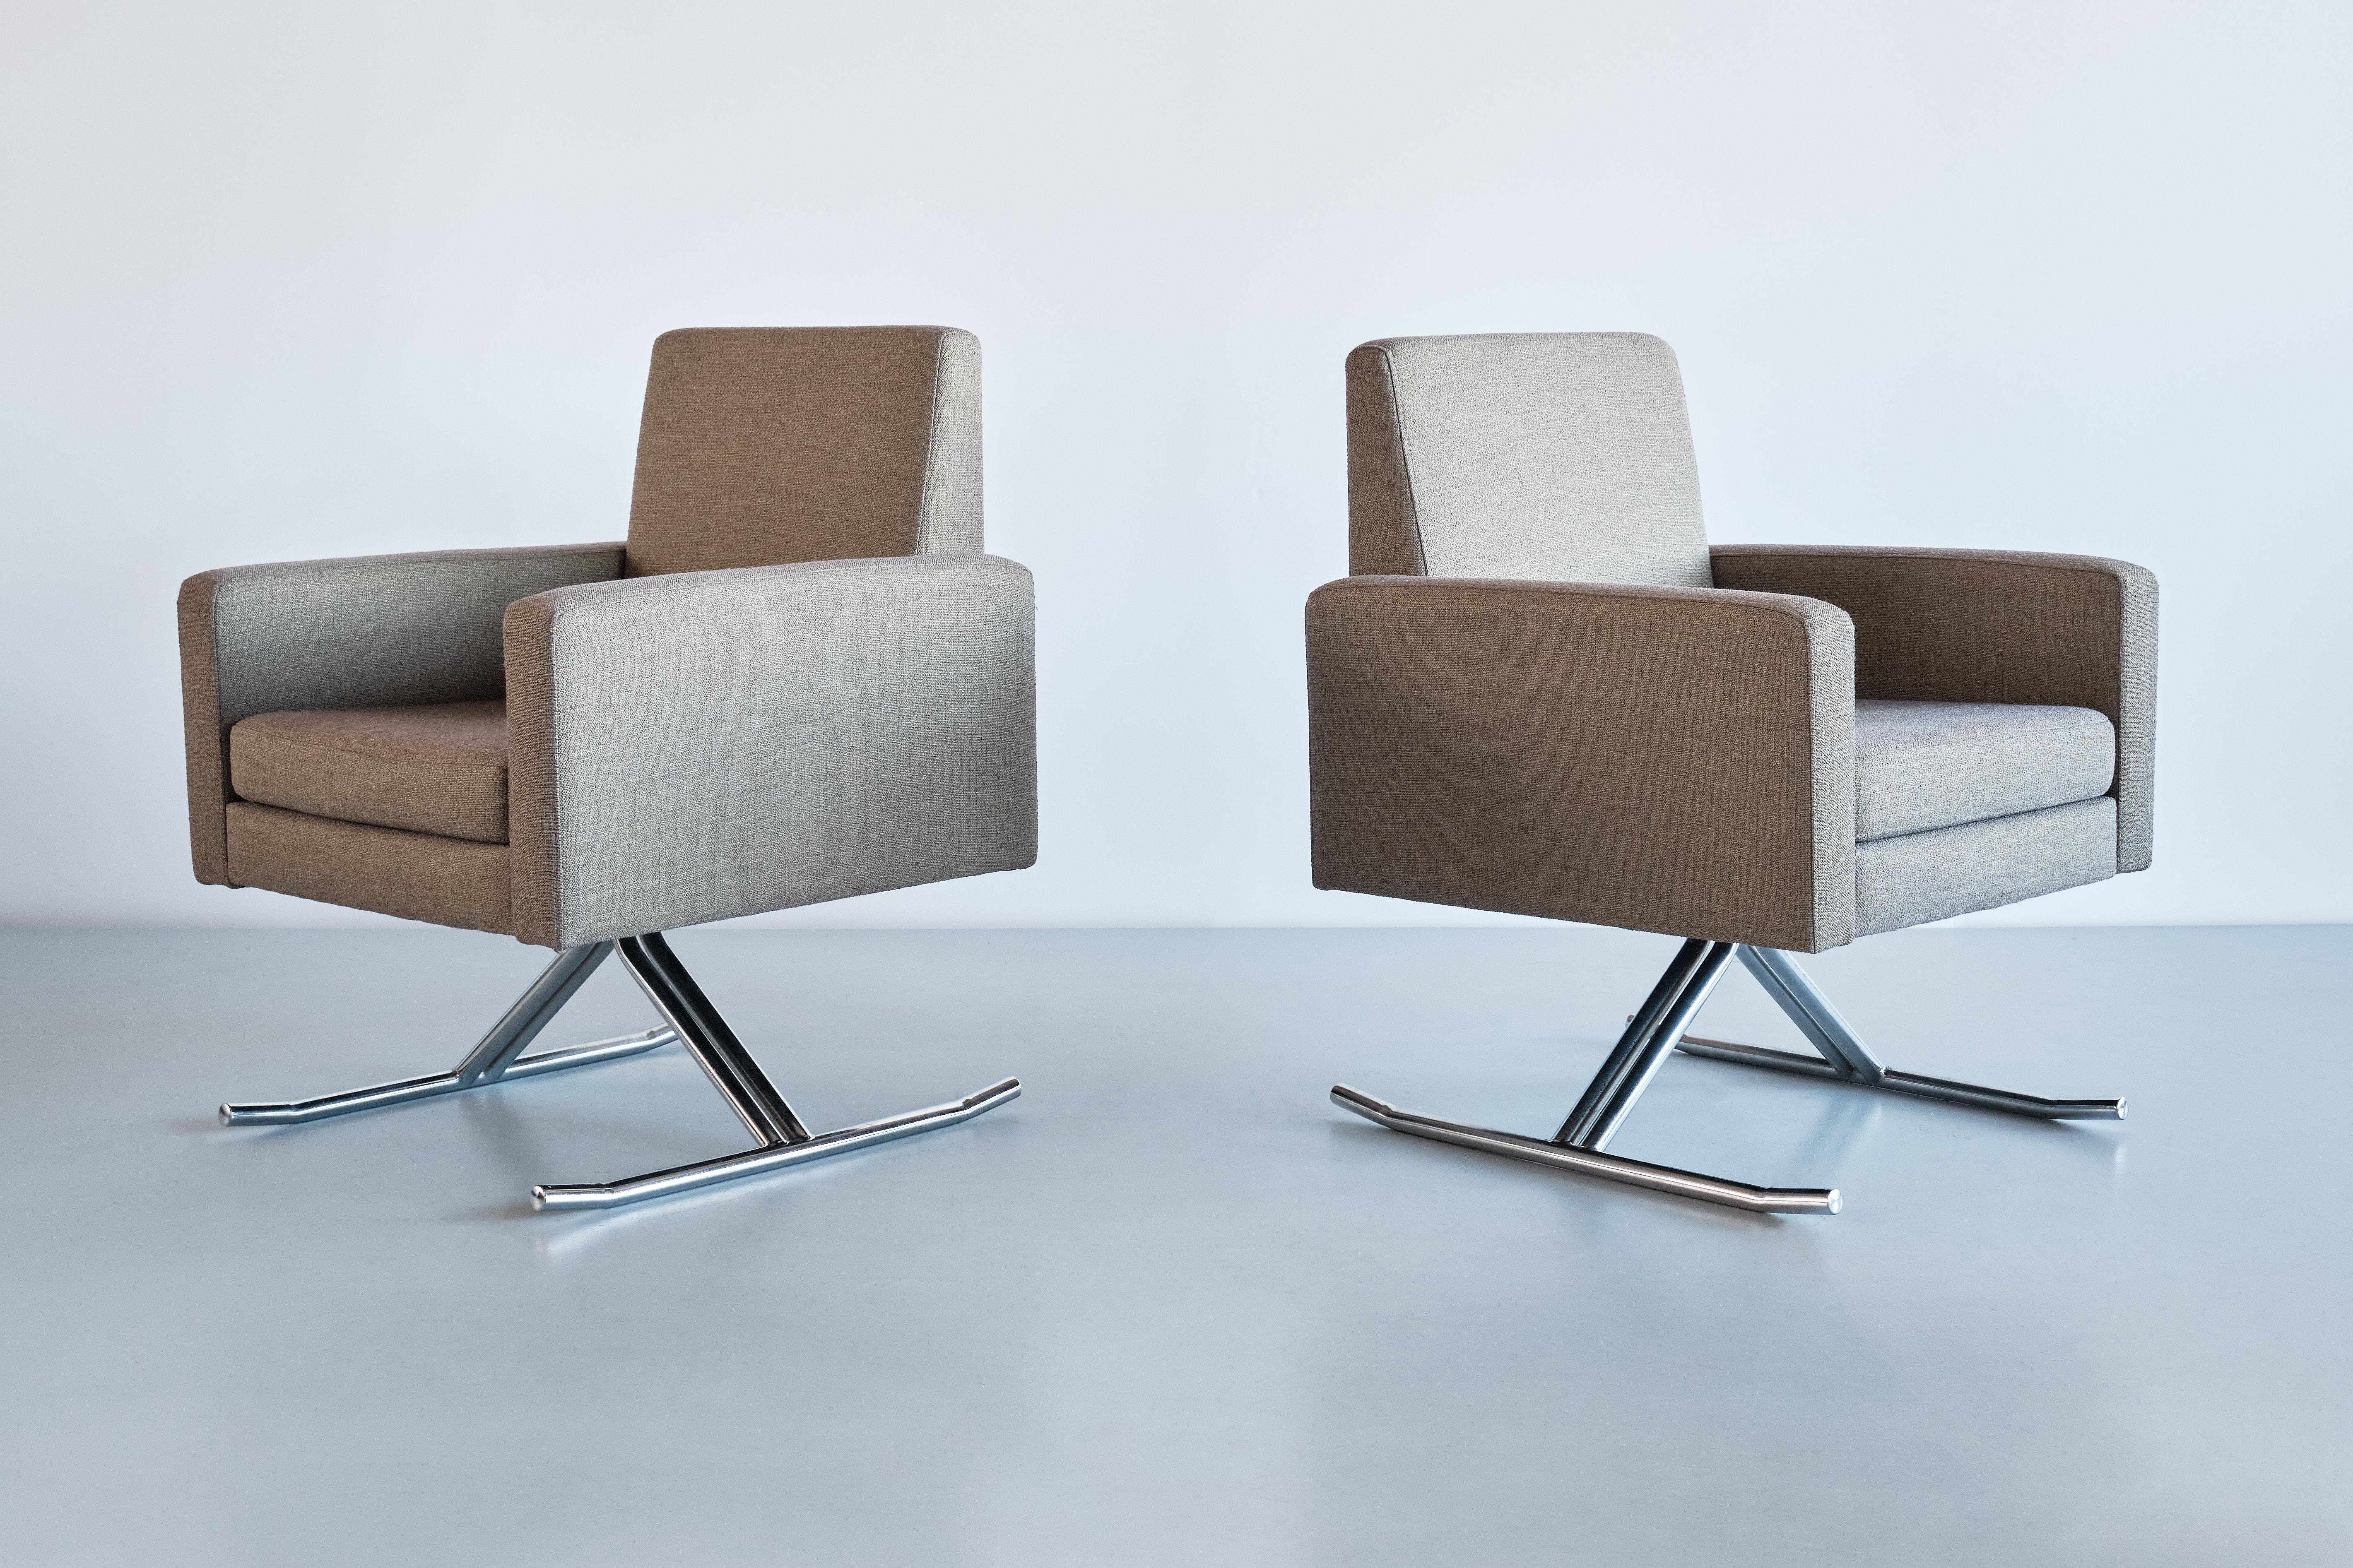 Cette paire de fauteuils exceptionnellement rare a été conçue par Joseph-André Motte et produite par l'Edition MPS en France à la fin des années 1960. Le modèle s'appelle 